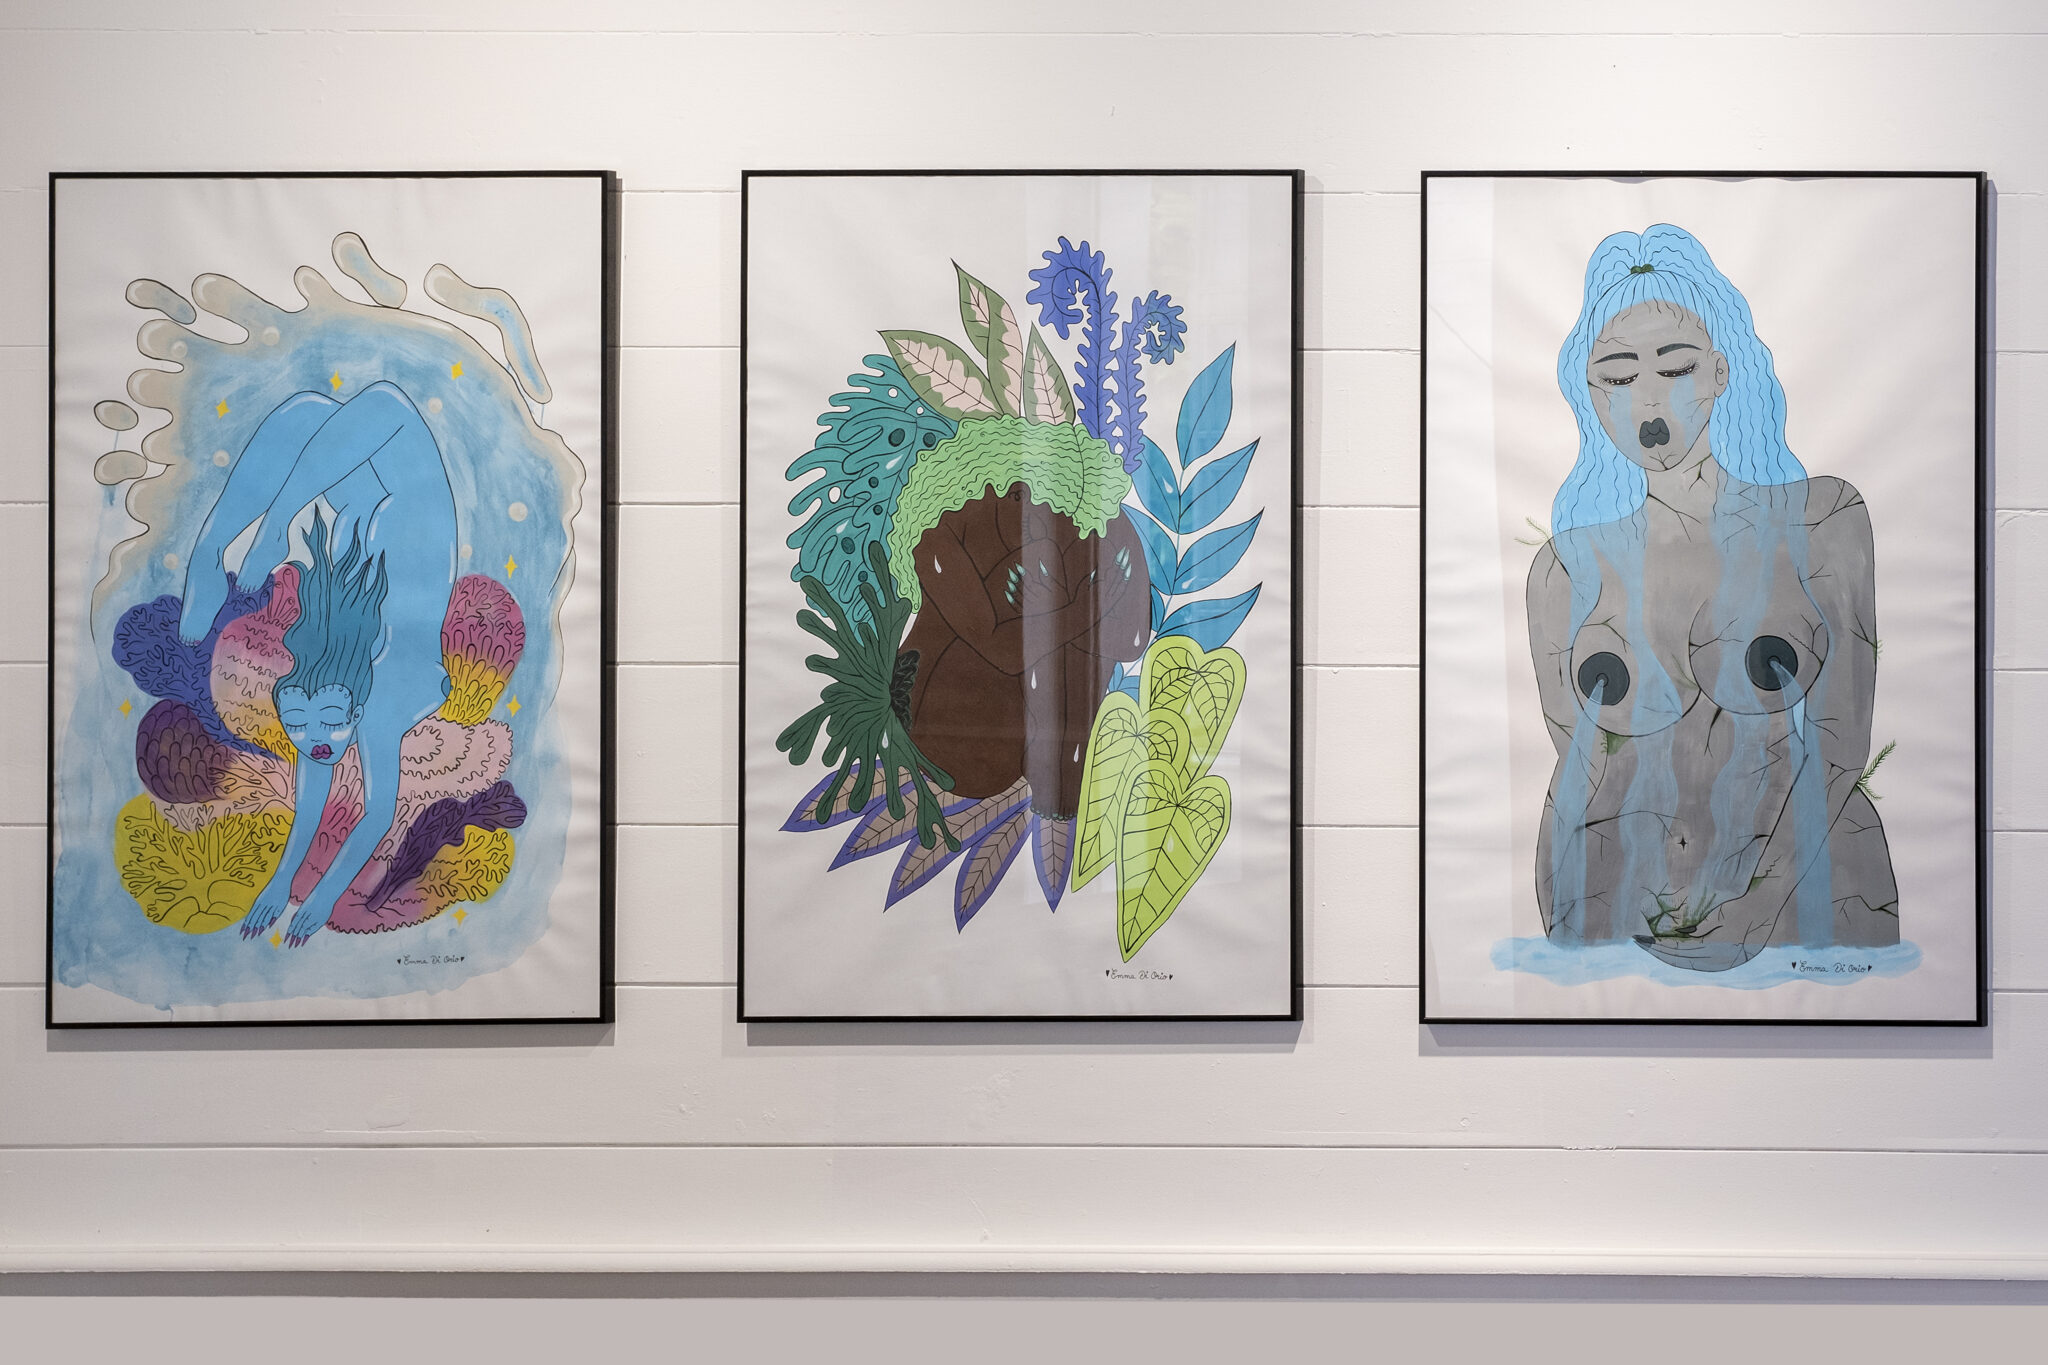 Emma Di Orio, Océan, 2020 / Forest, 2020 /Waterfall, 2020, Acrylique et encre sur papier, 1m x 70 cm. © Jacques Kuyten